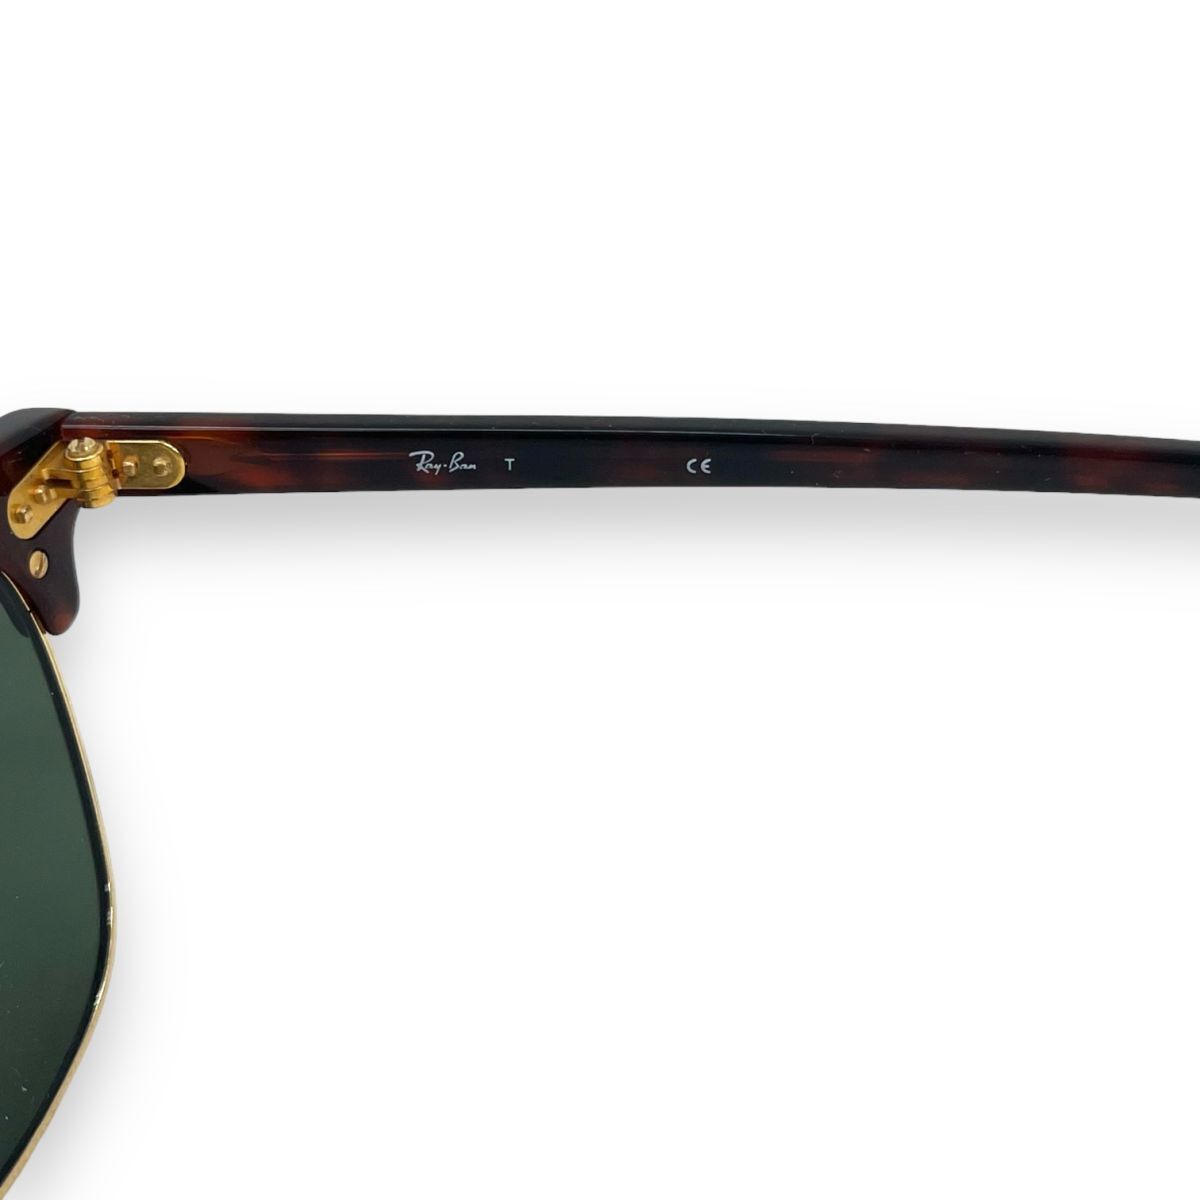 Ray-Ban レイバン サングラス 眼鏡 アイウェア ファッション ケース付き ブランド ClubMaster クラブマスター RB3016 べっ甲 グリーン